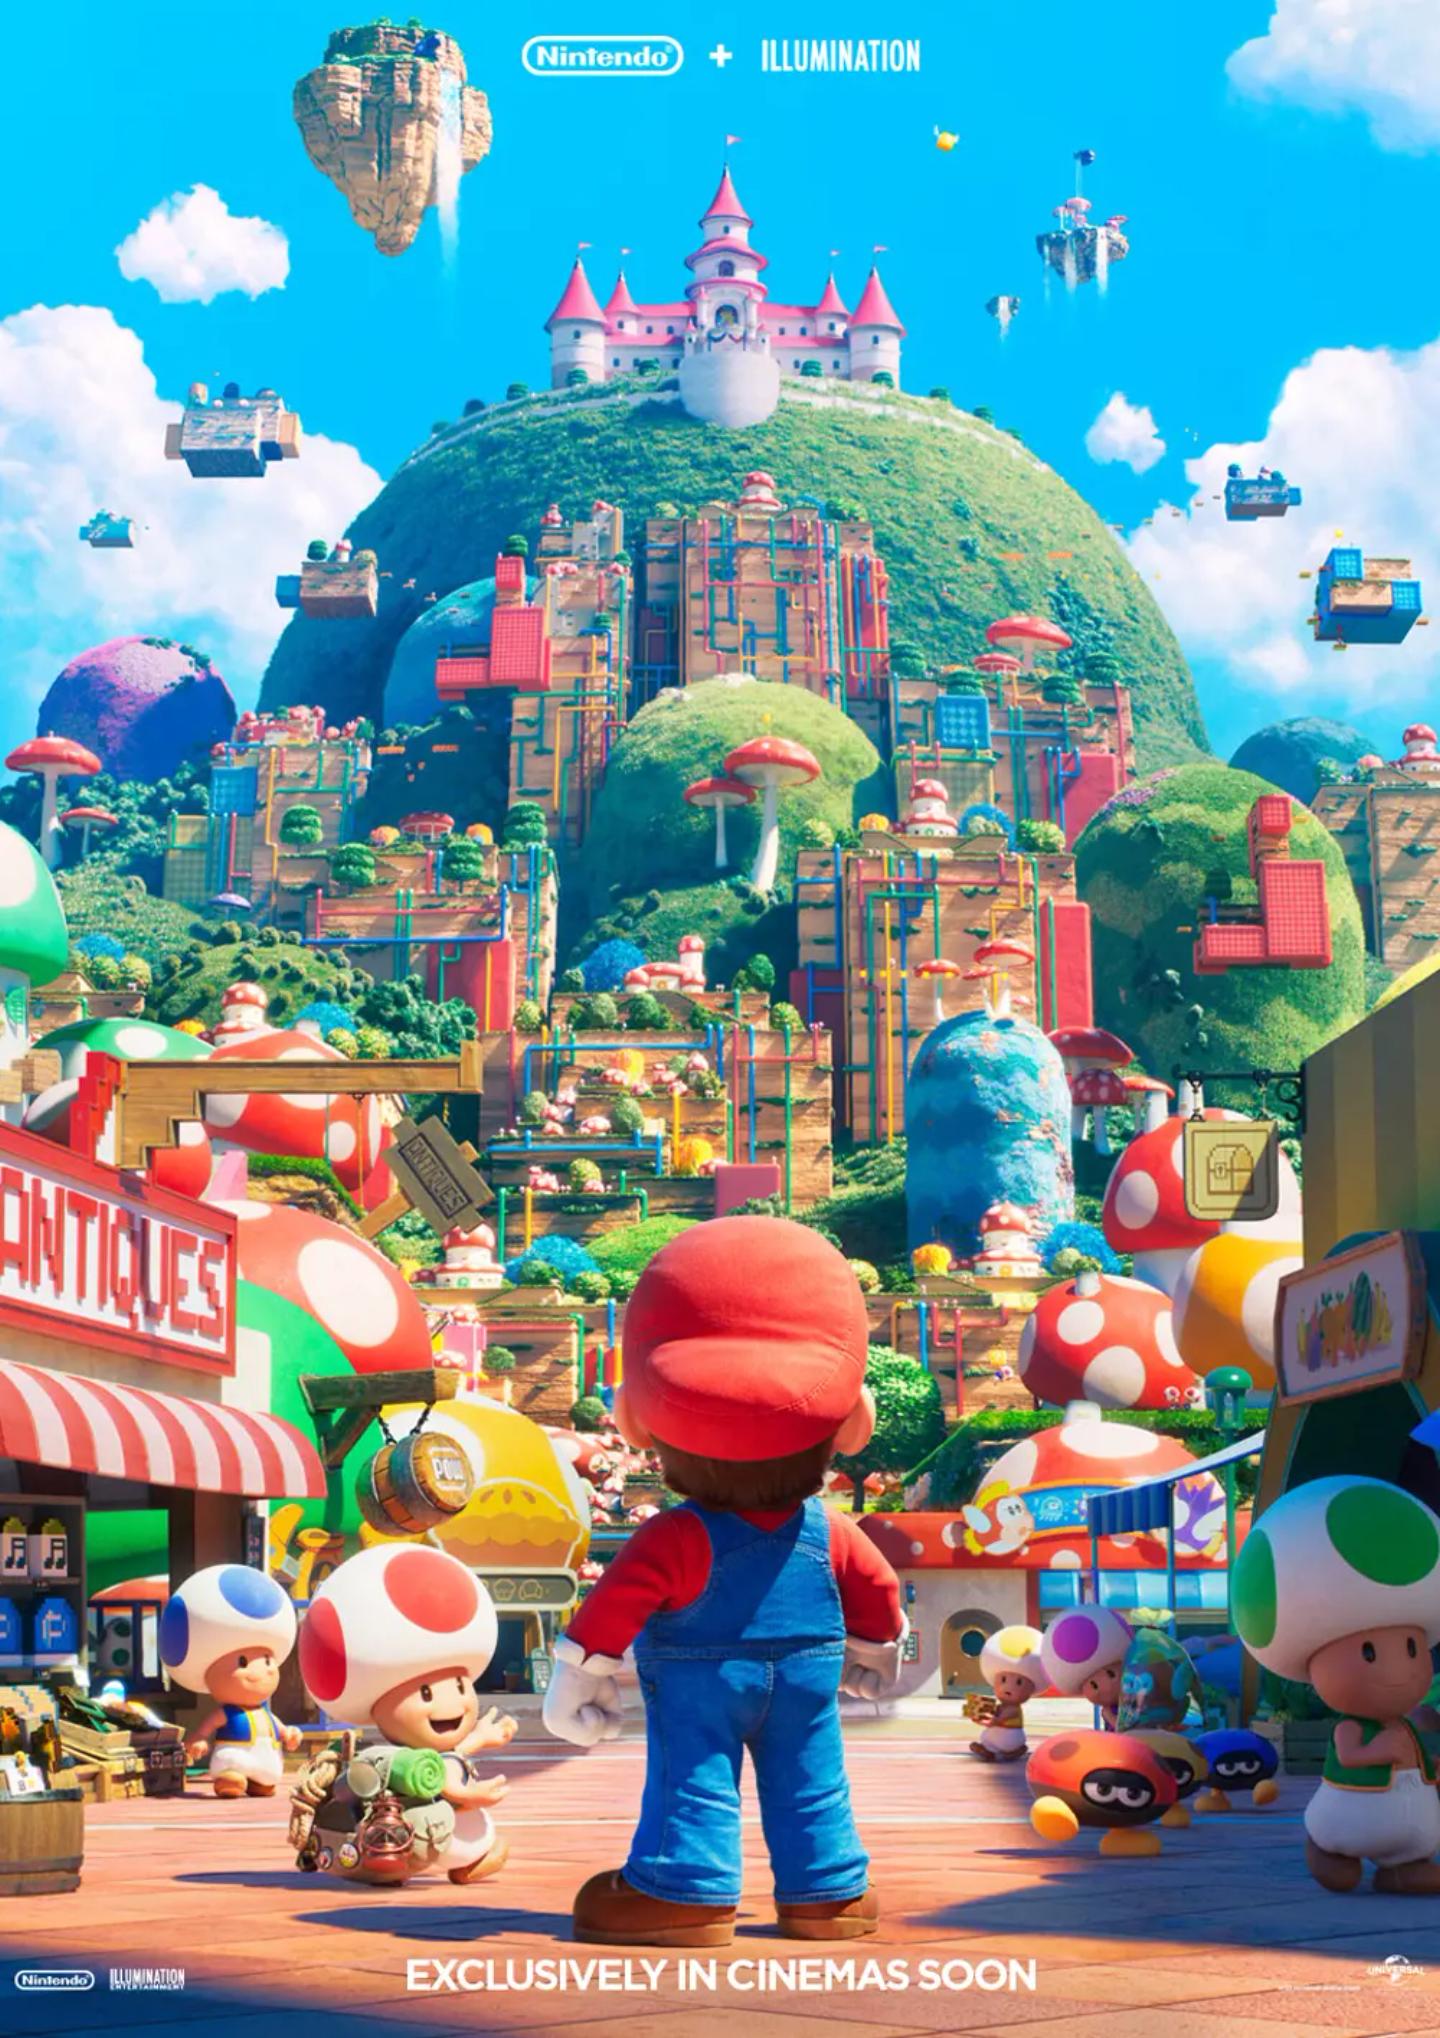 Plakat for 'Super Mario Bros. filmen'